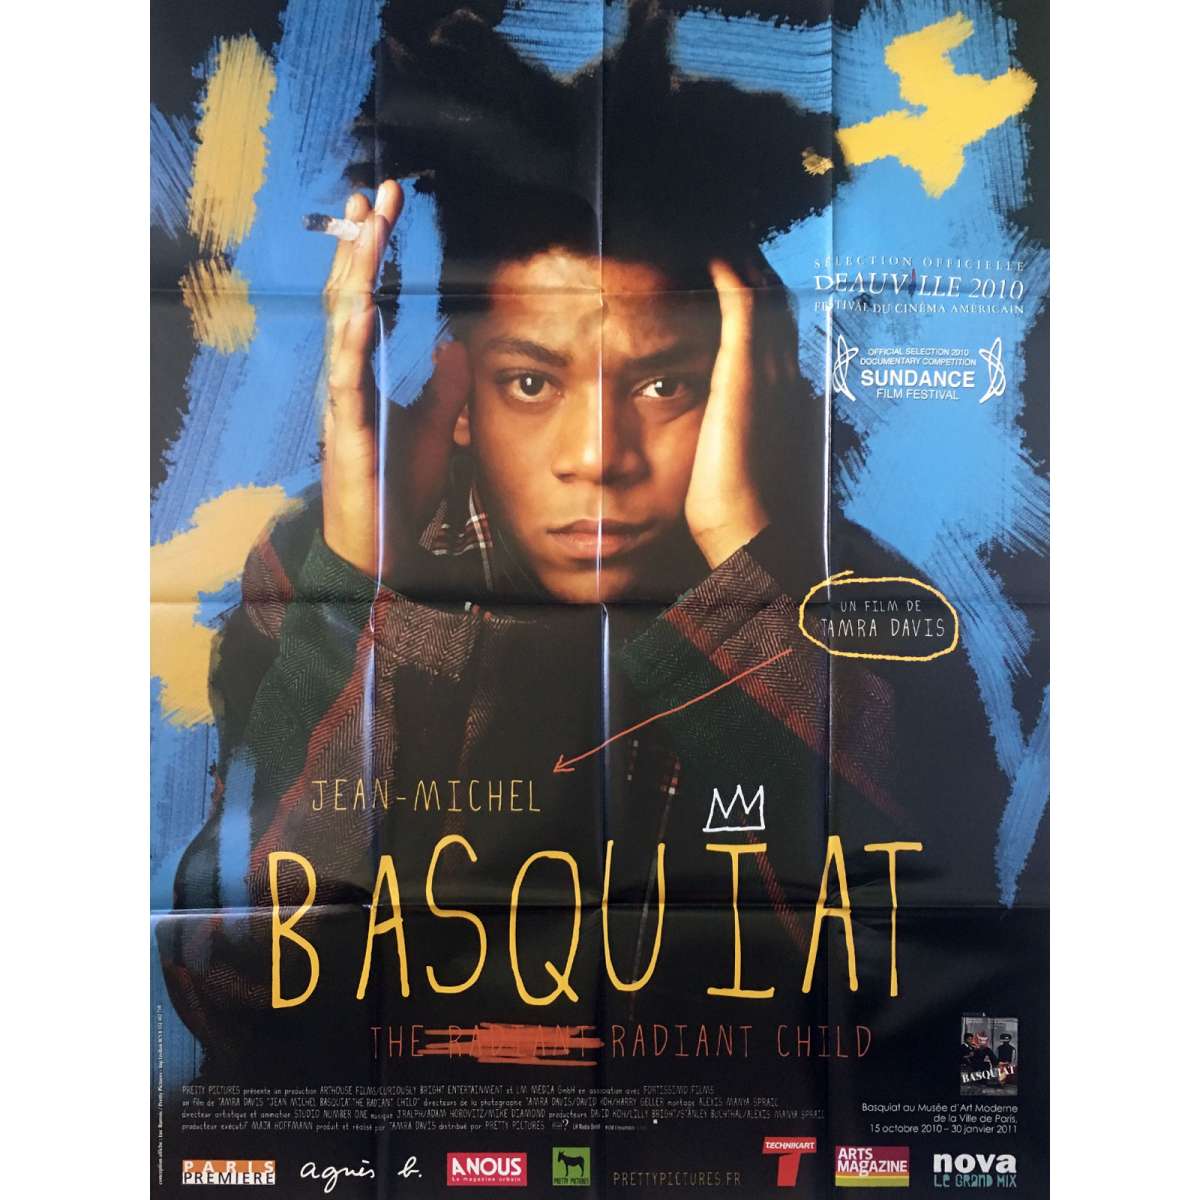 basquiat-original-movie-poster-47x63-in-1996-julian-schnabel-david-bowie.jpg